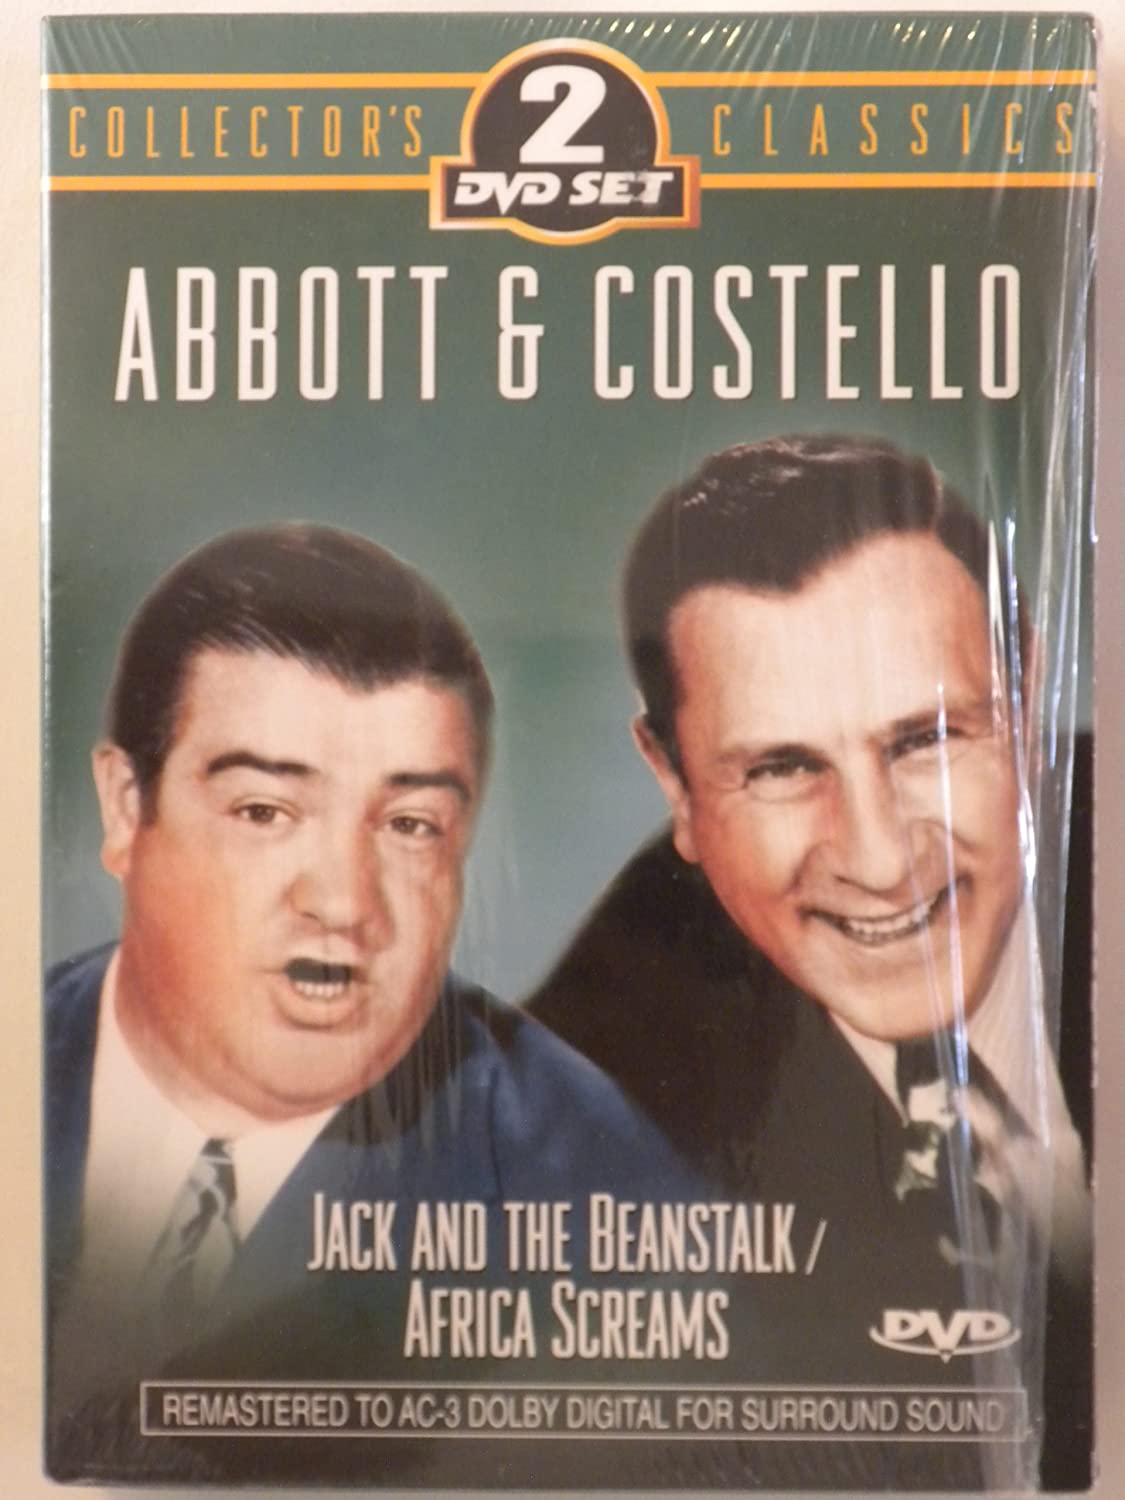 Abbott & Costell: Collector's Classics 2 DVD Set [DVD]